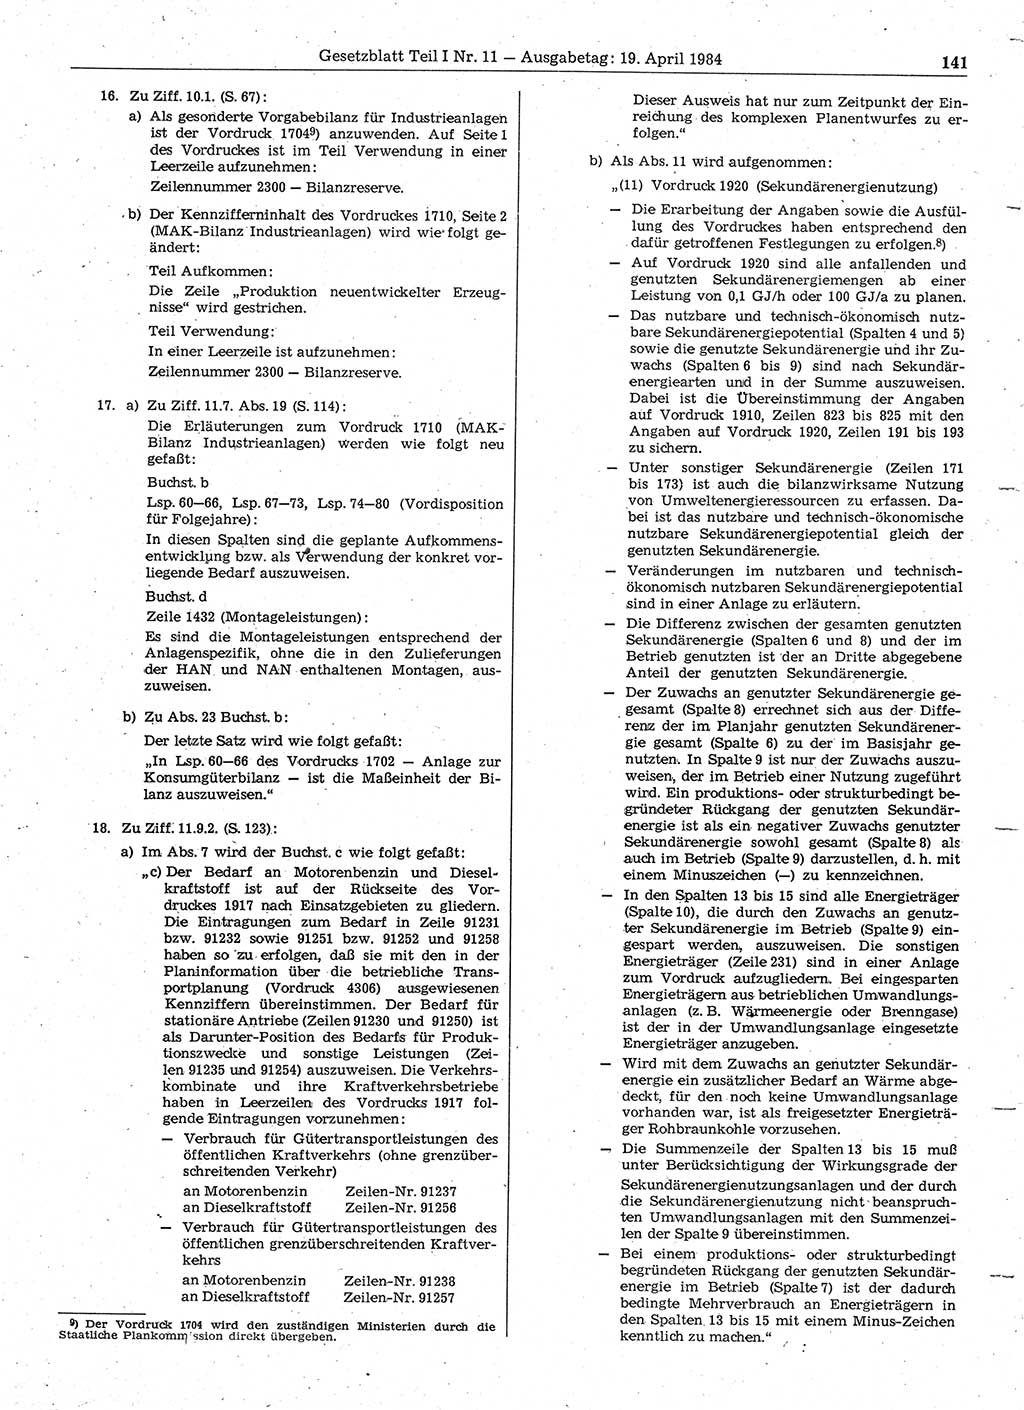 Gesetzblatt (GBl.) der Deutschen Demokratischen Republik (DDR) Teil Ⅰ 1984, Seite 141 (GBl. DDR Ⅰ 1984, S. 141)